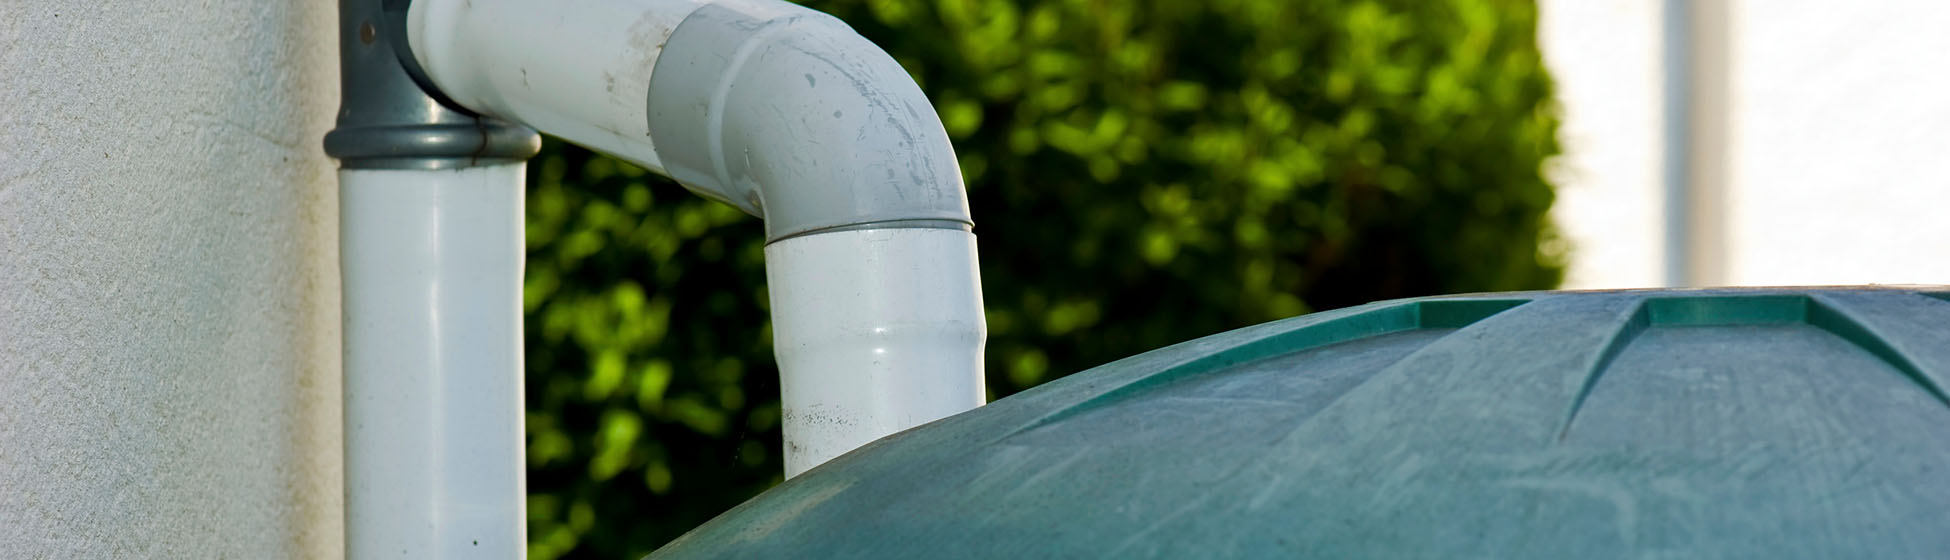 Comment reparer une fuite sur un recuperateur d eau